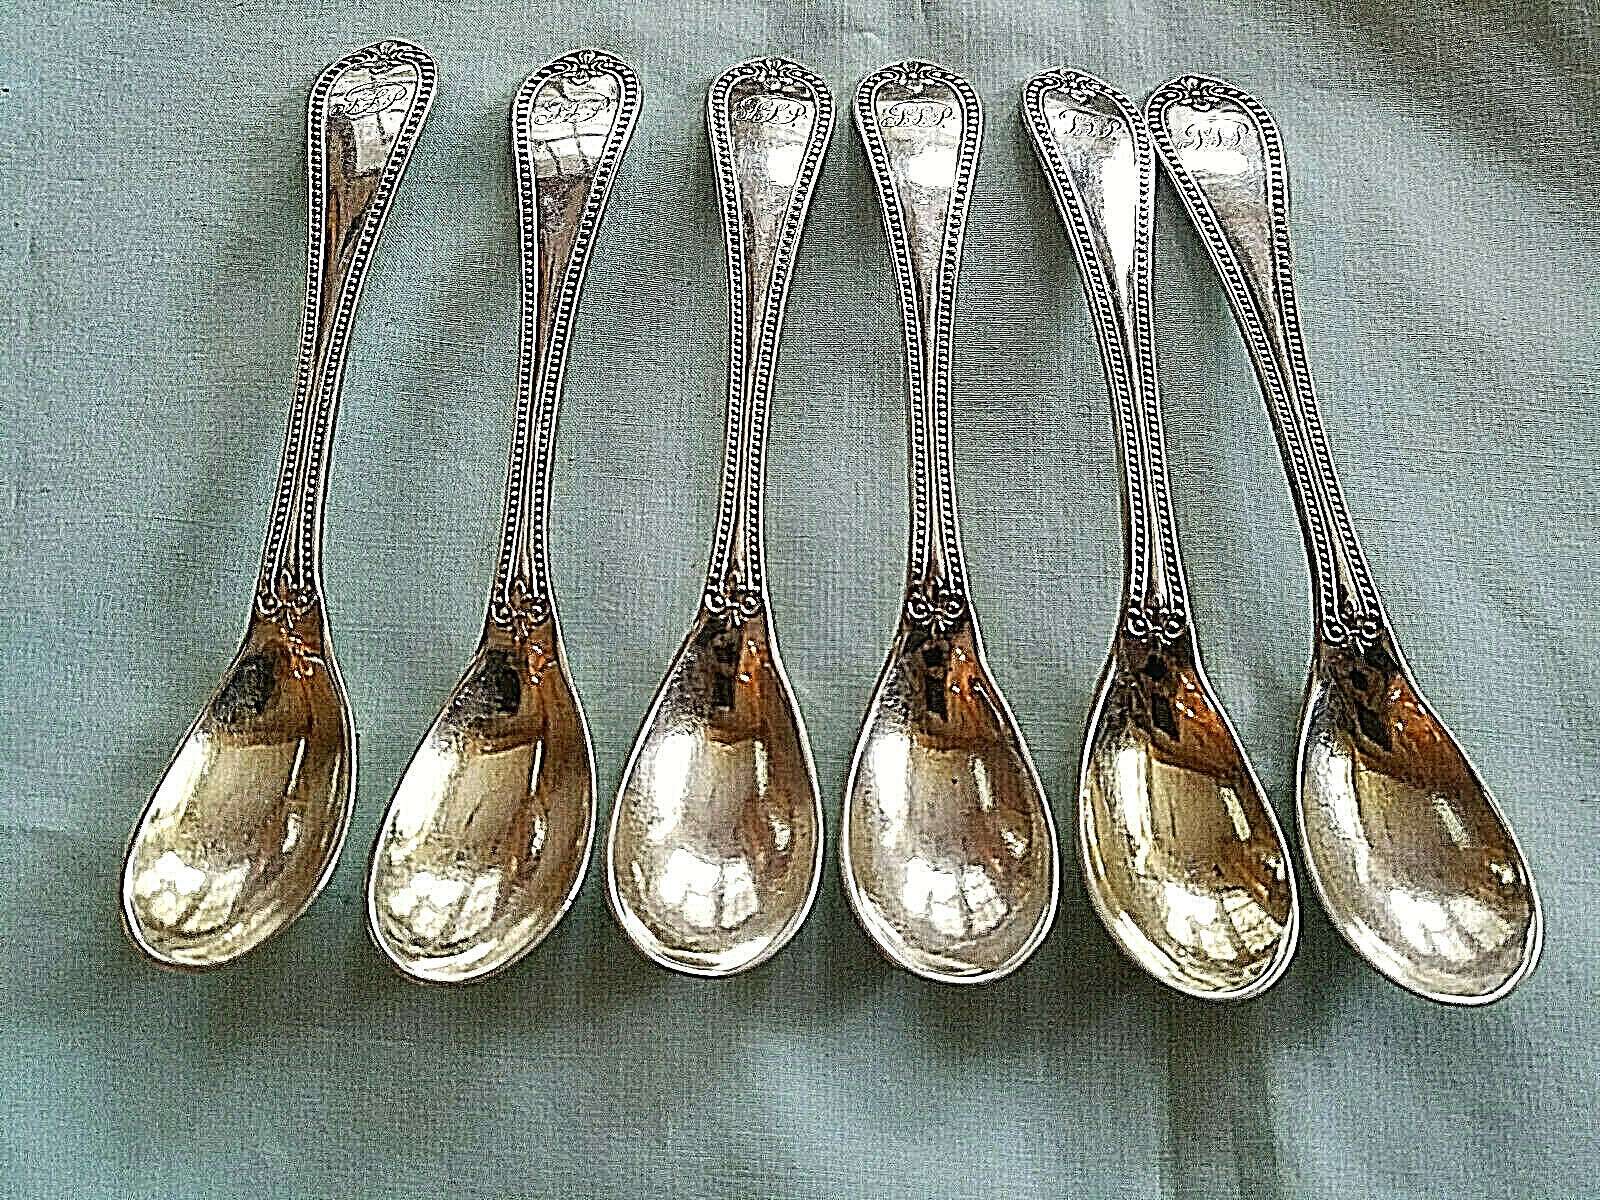 6 Coin Silver Egg Spoons 5 3/4" by Bailey & Co. Philaadelphia 1848 Mono